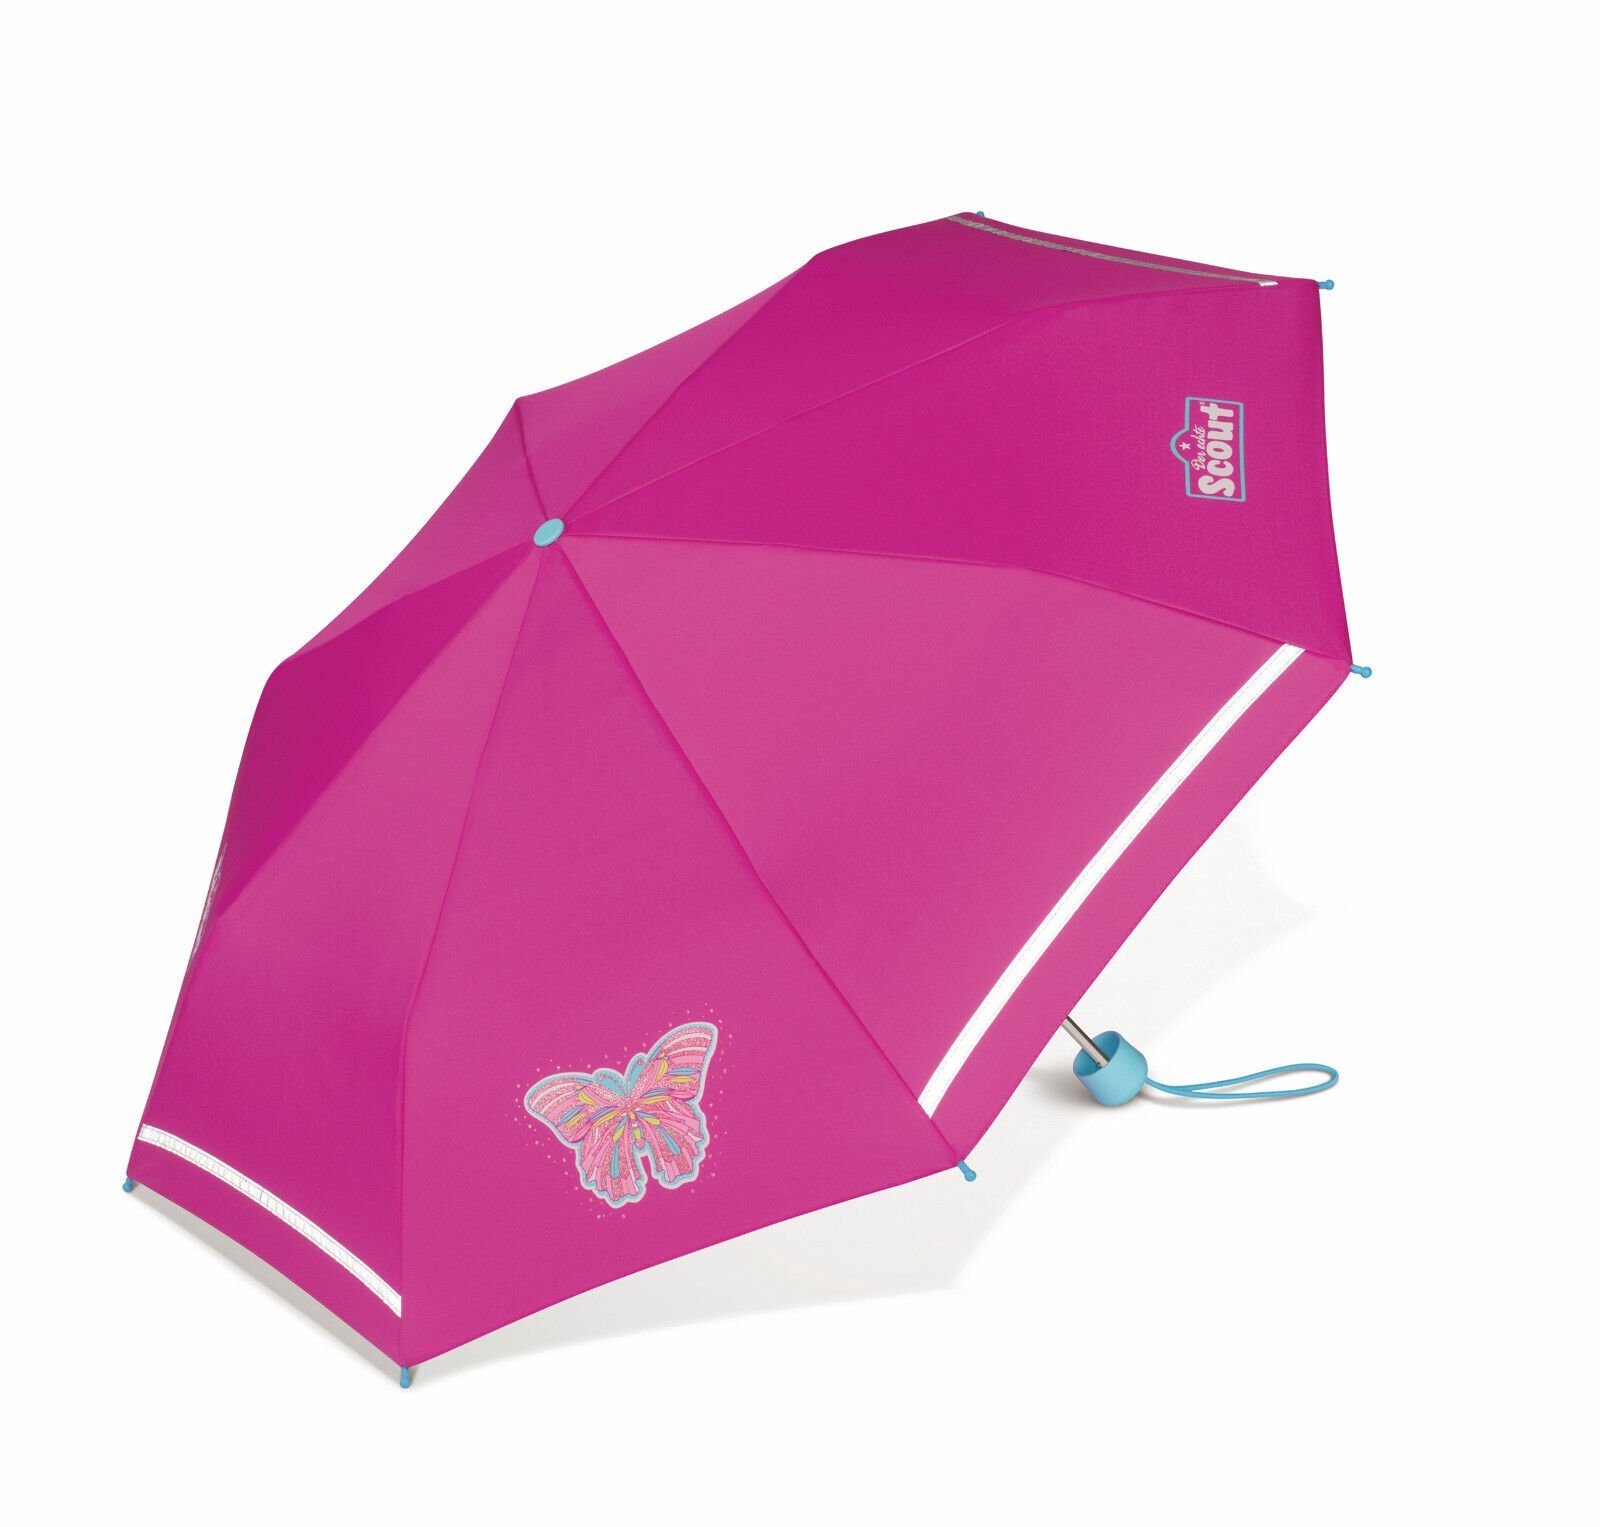 Regenschirm reflektierend, Schmetterling Butterfly, Reflektionsstreifen mit Kinder Girls Taschenregenschirm Scout mit Glitzereffekt